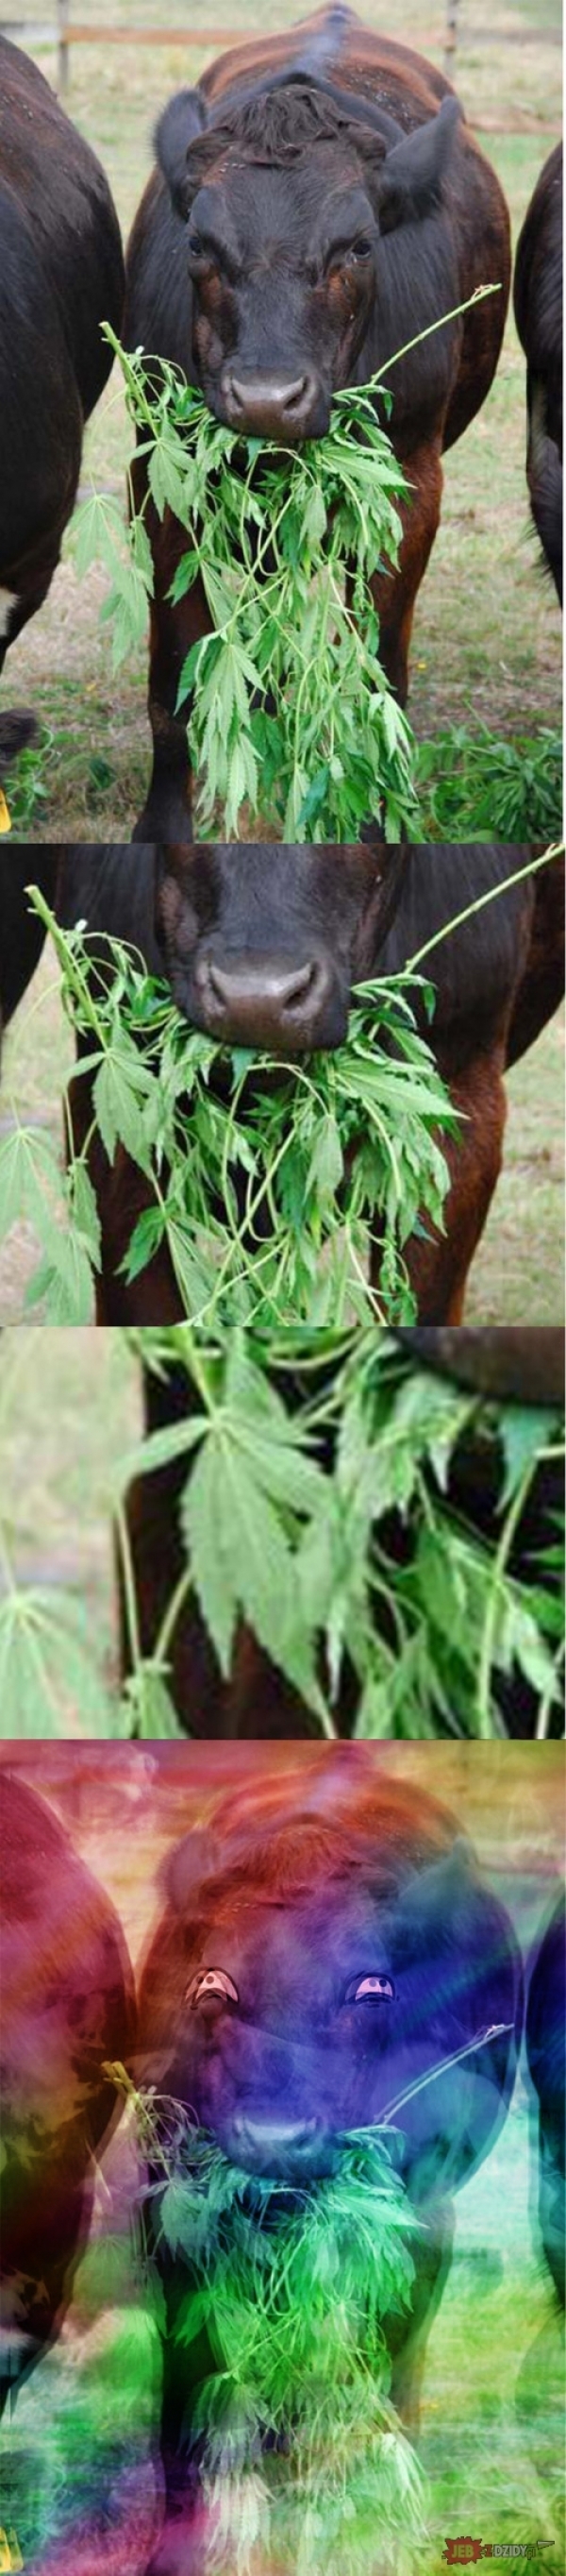 Корова марихуана длительно употребление конопли